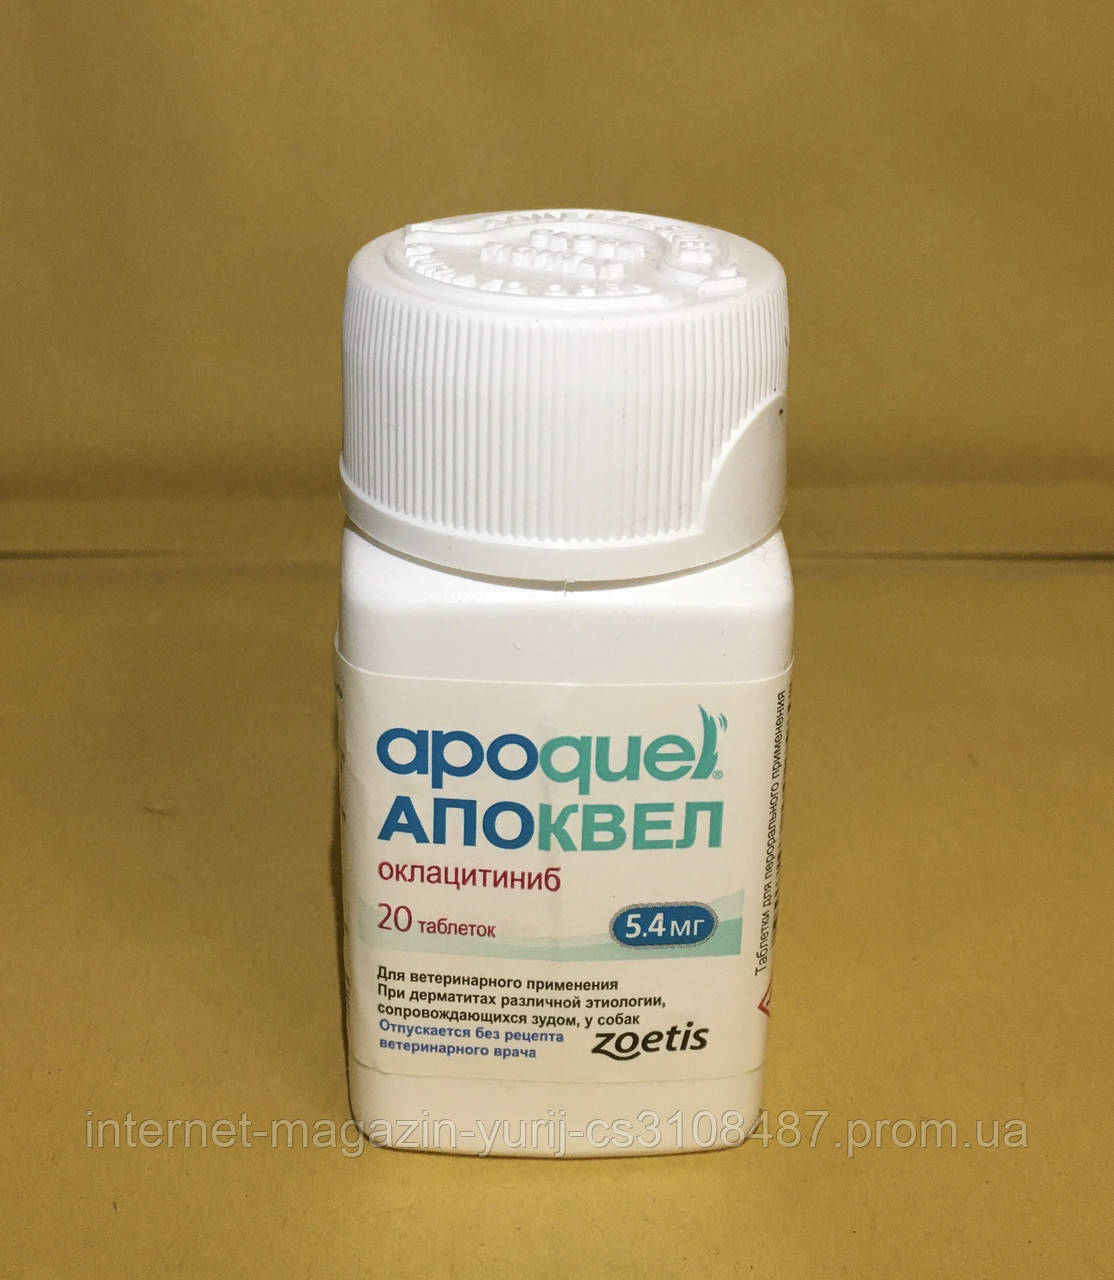 Apoquel Апоквель* Zoetis (оклацитиниб) 5,4 мг 100таб